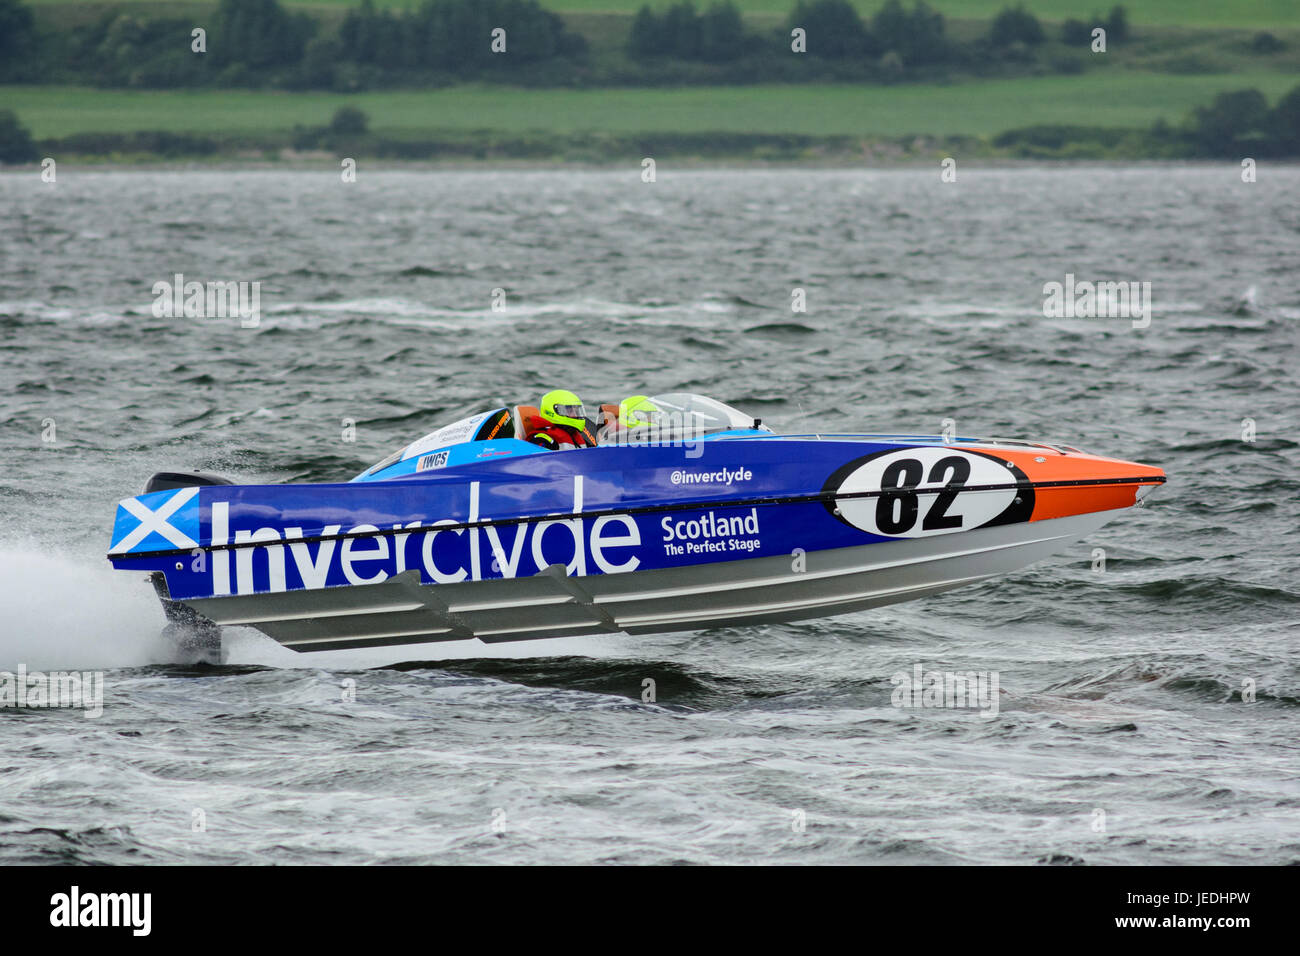 P1 Superstock powerboat" Racing de la Explanada, Greenock, Escocia, el 24 de junio de 2017. Inverclyde 'barco' 82 'espíritu de Inverclyde' impulsada y navegado por David y Ashleigh Finlayson, respectivamente. Foto de stock